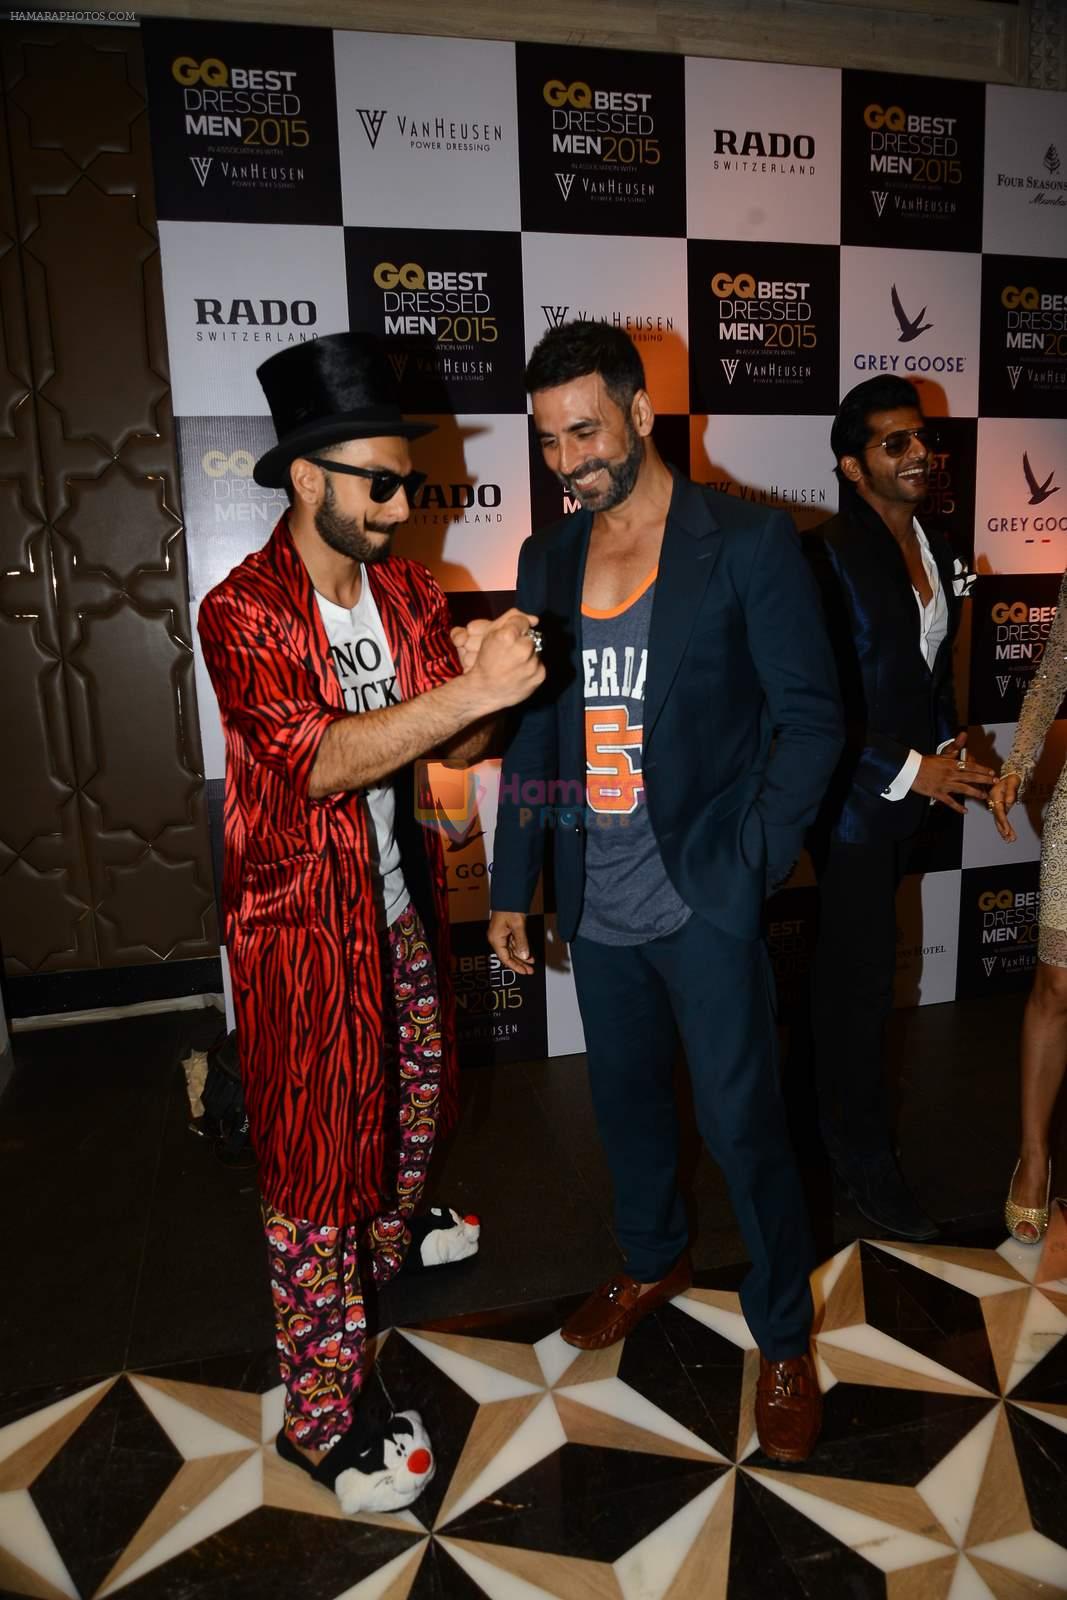 Akshay Kumar, Ranveer Singh at GQ Best-Dressed Men in India 2015 in Mumbai on 12th June 2015